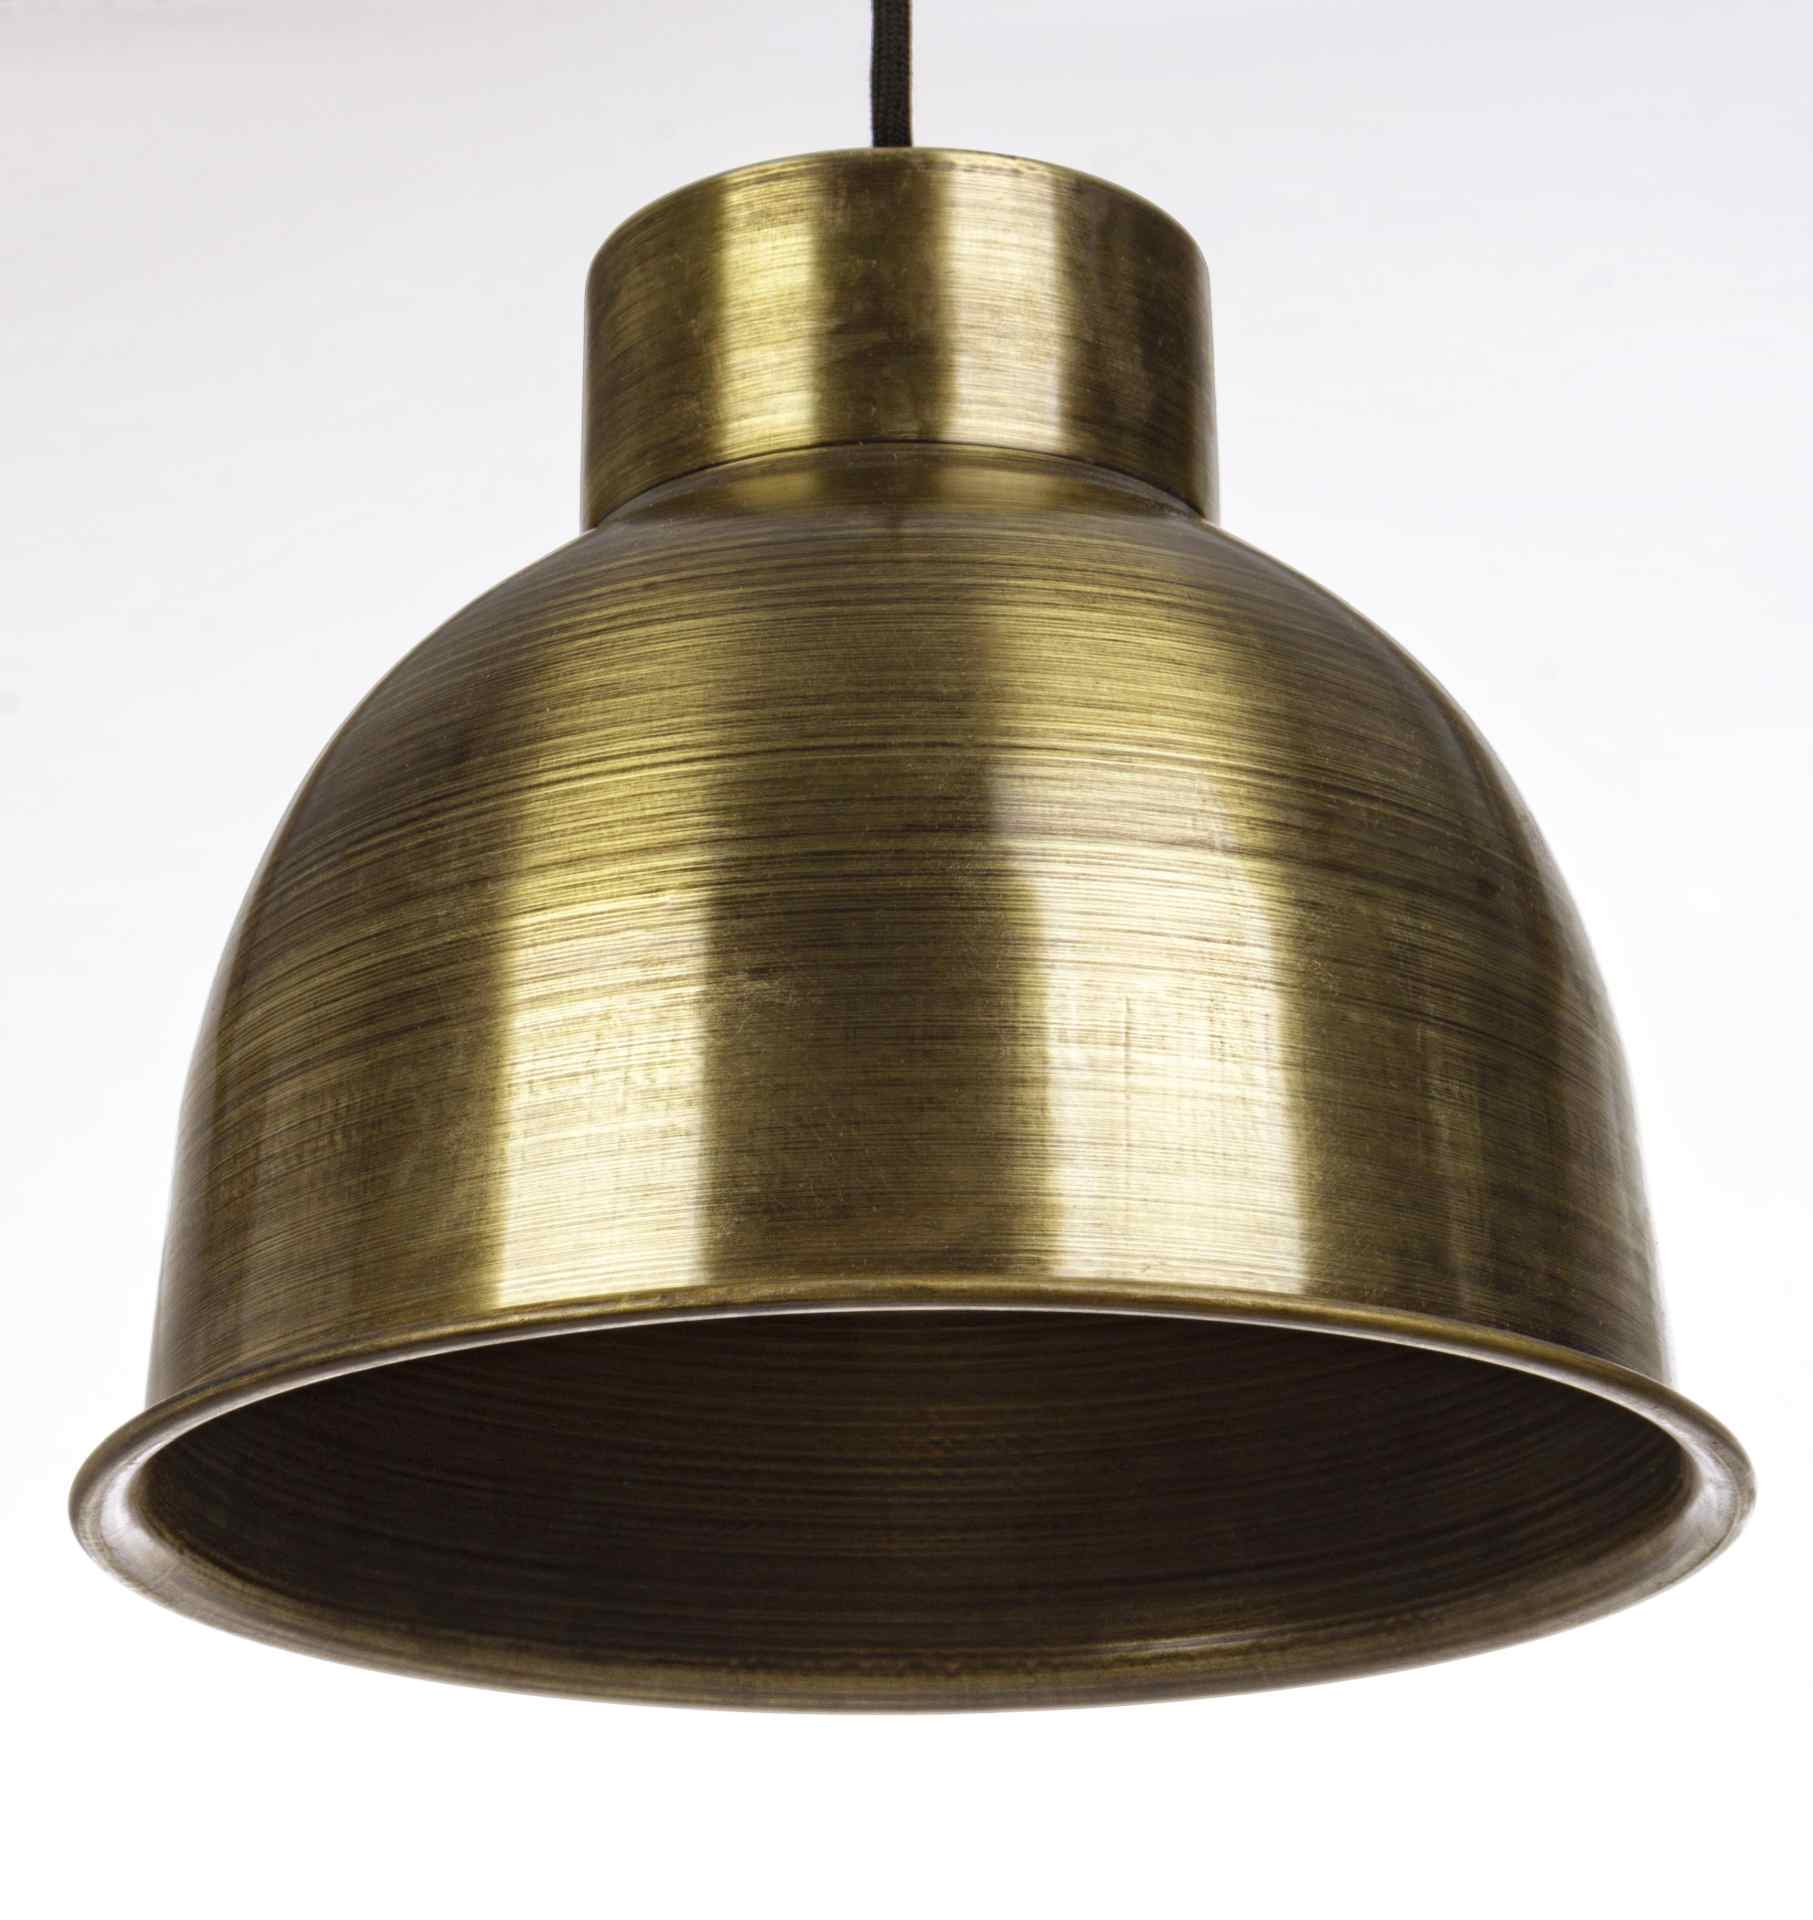 Die Hängeleuchte Maribel überzeugt mit ihrem klassischen Design. Gefertigt wurde sie aus Metall, welches einen goldenen Farbton besitzt. Das Gestell ist auch aus Metall. Die Lampe besitzt eine Höhe von 25 cm.